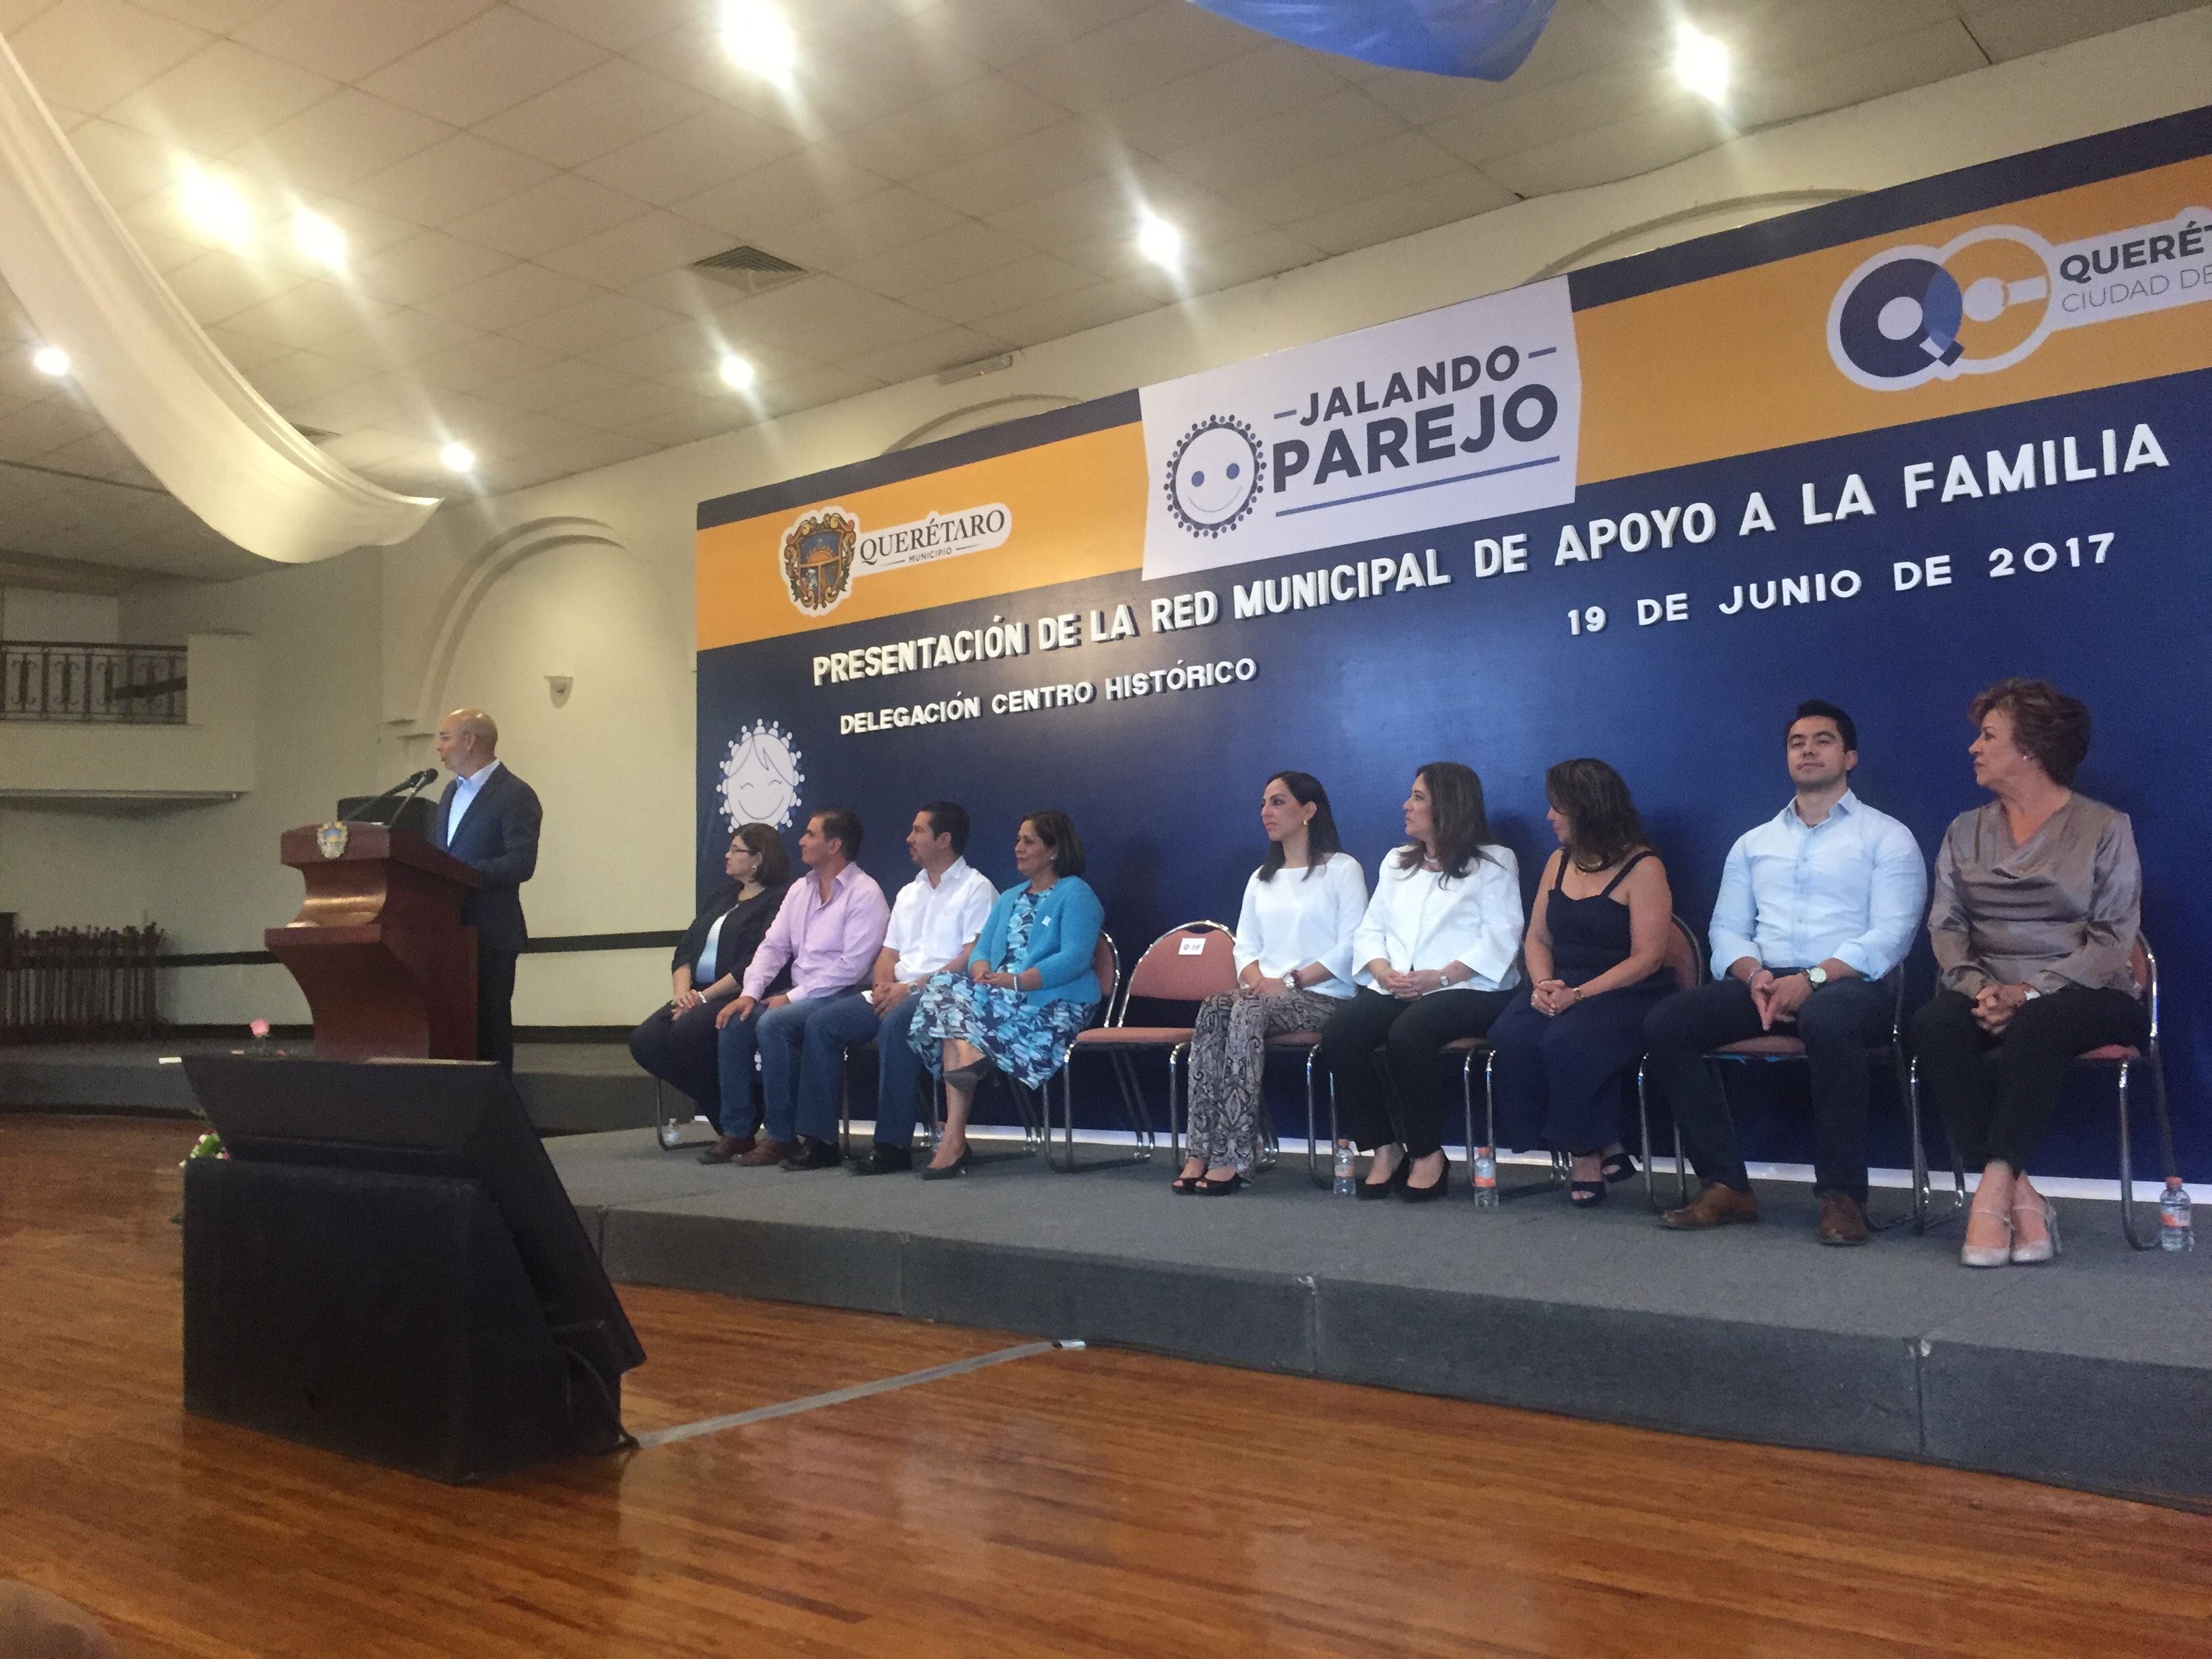  Presenta municipio de Querétaro Red Municipal de Apoyo a la Familia